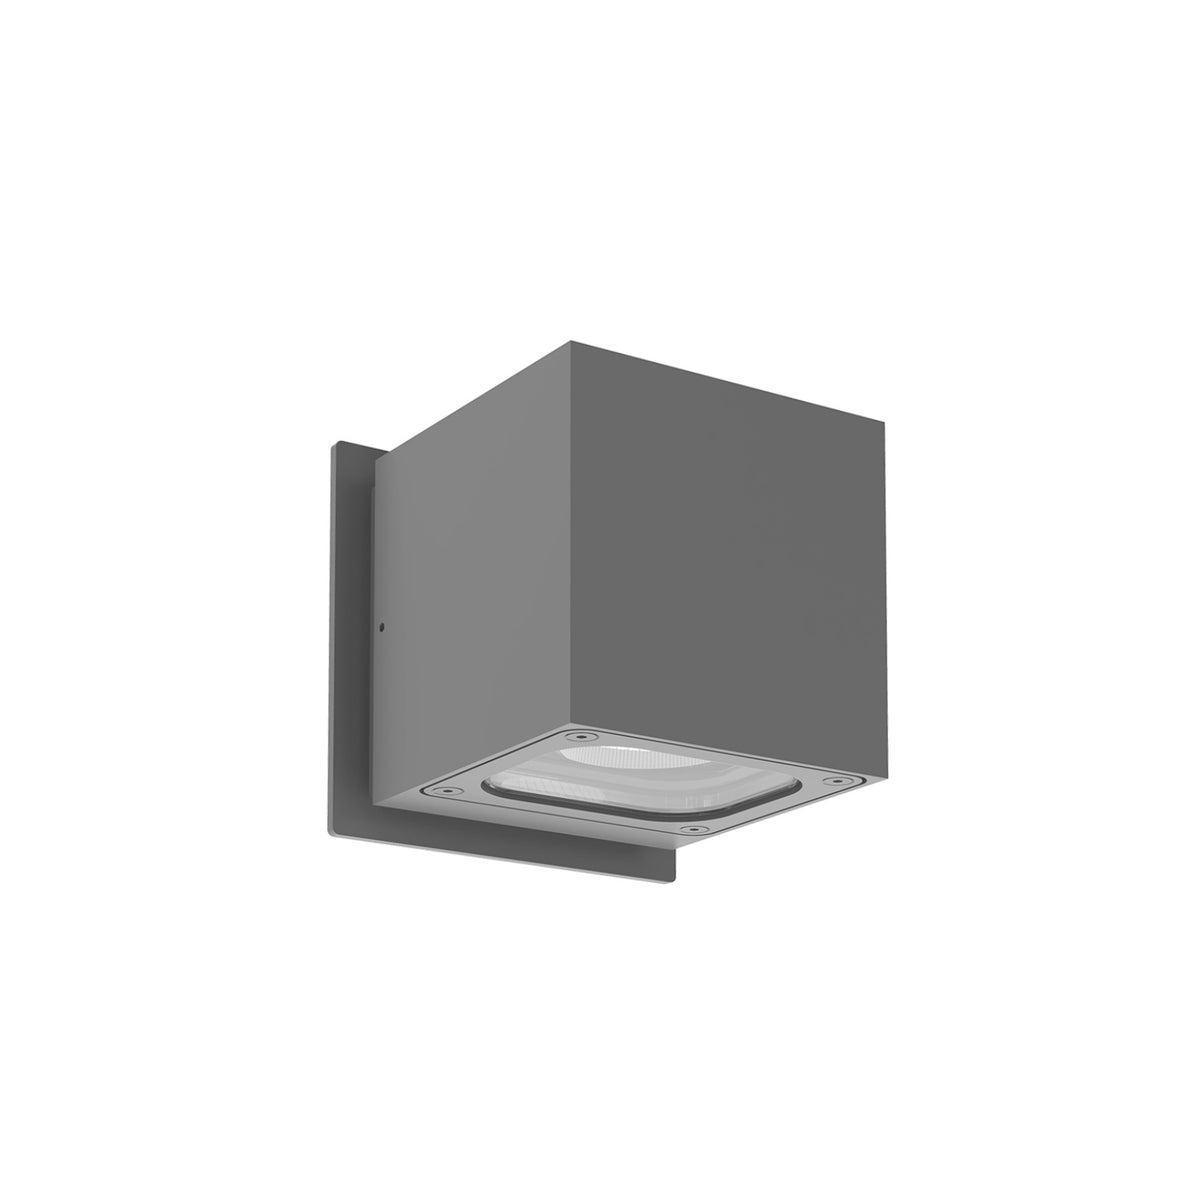 Kuzco Lighting - EW33204-GH - LED Outdoor Wall Mount - Stato - Black|Graphite|White